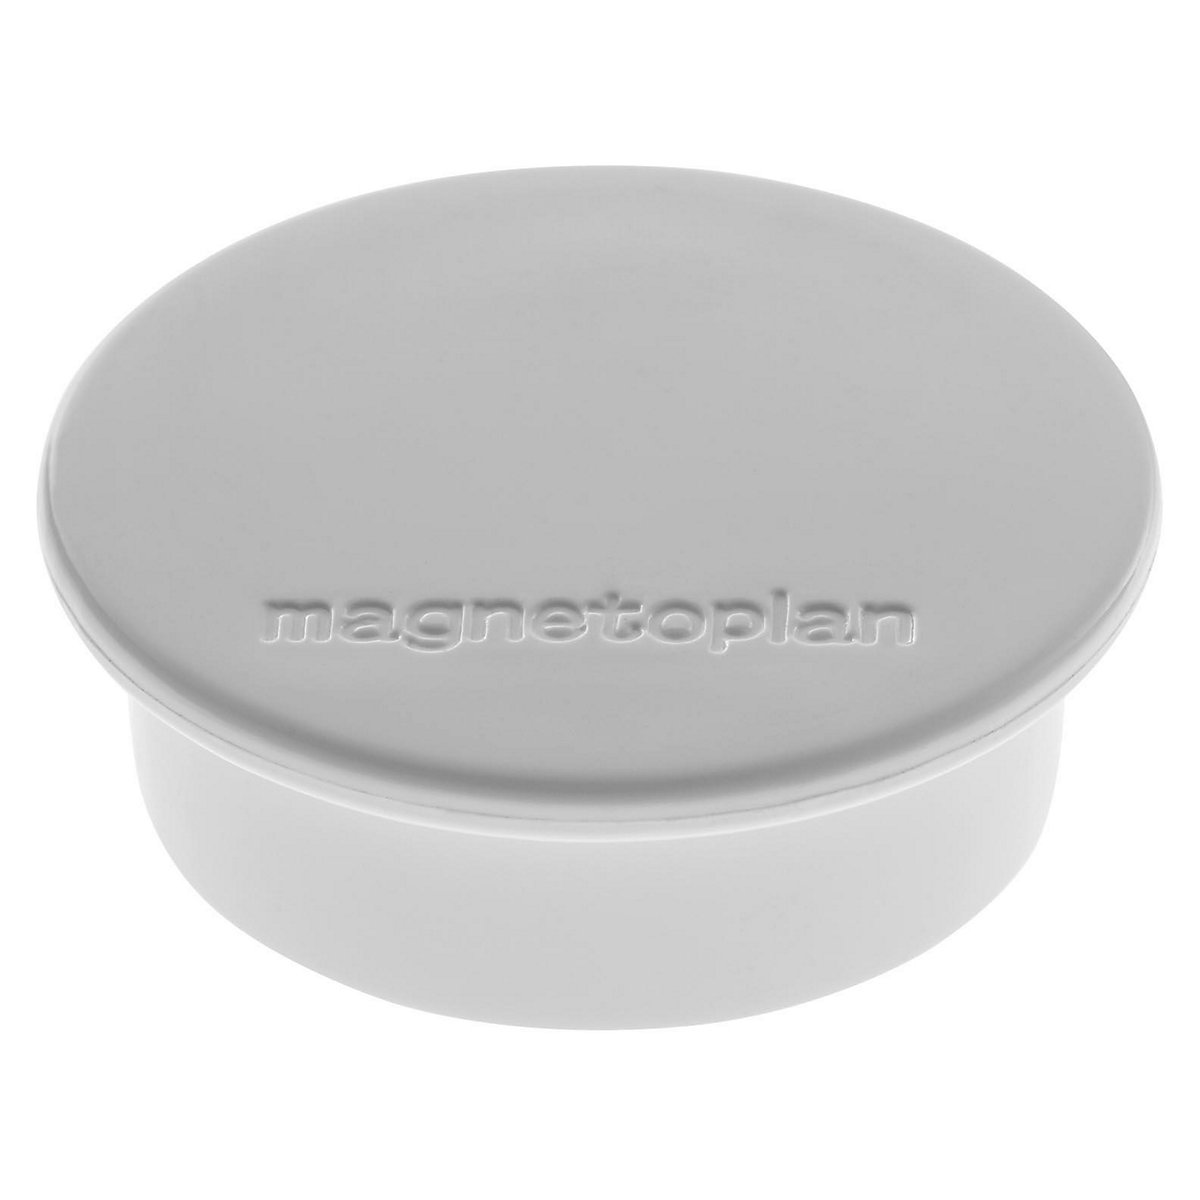 Magnet DISCOFIX COLOR magnetoplan, Ø 40 mm, VE 40 Stk, grau-7